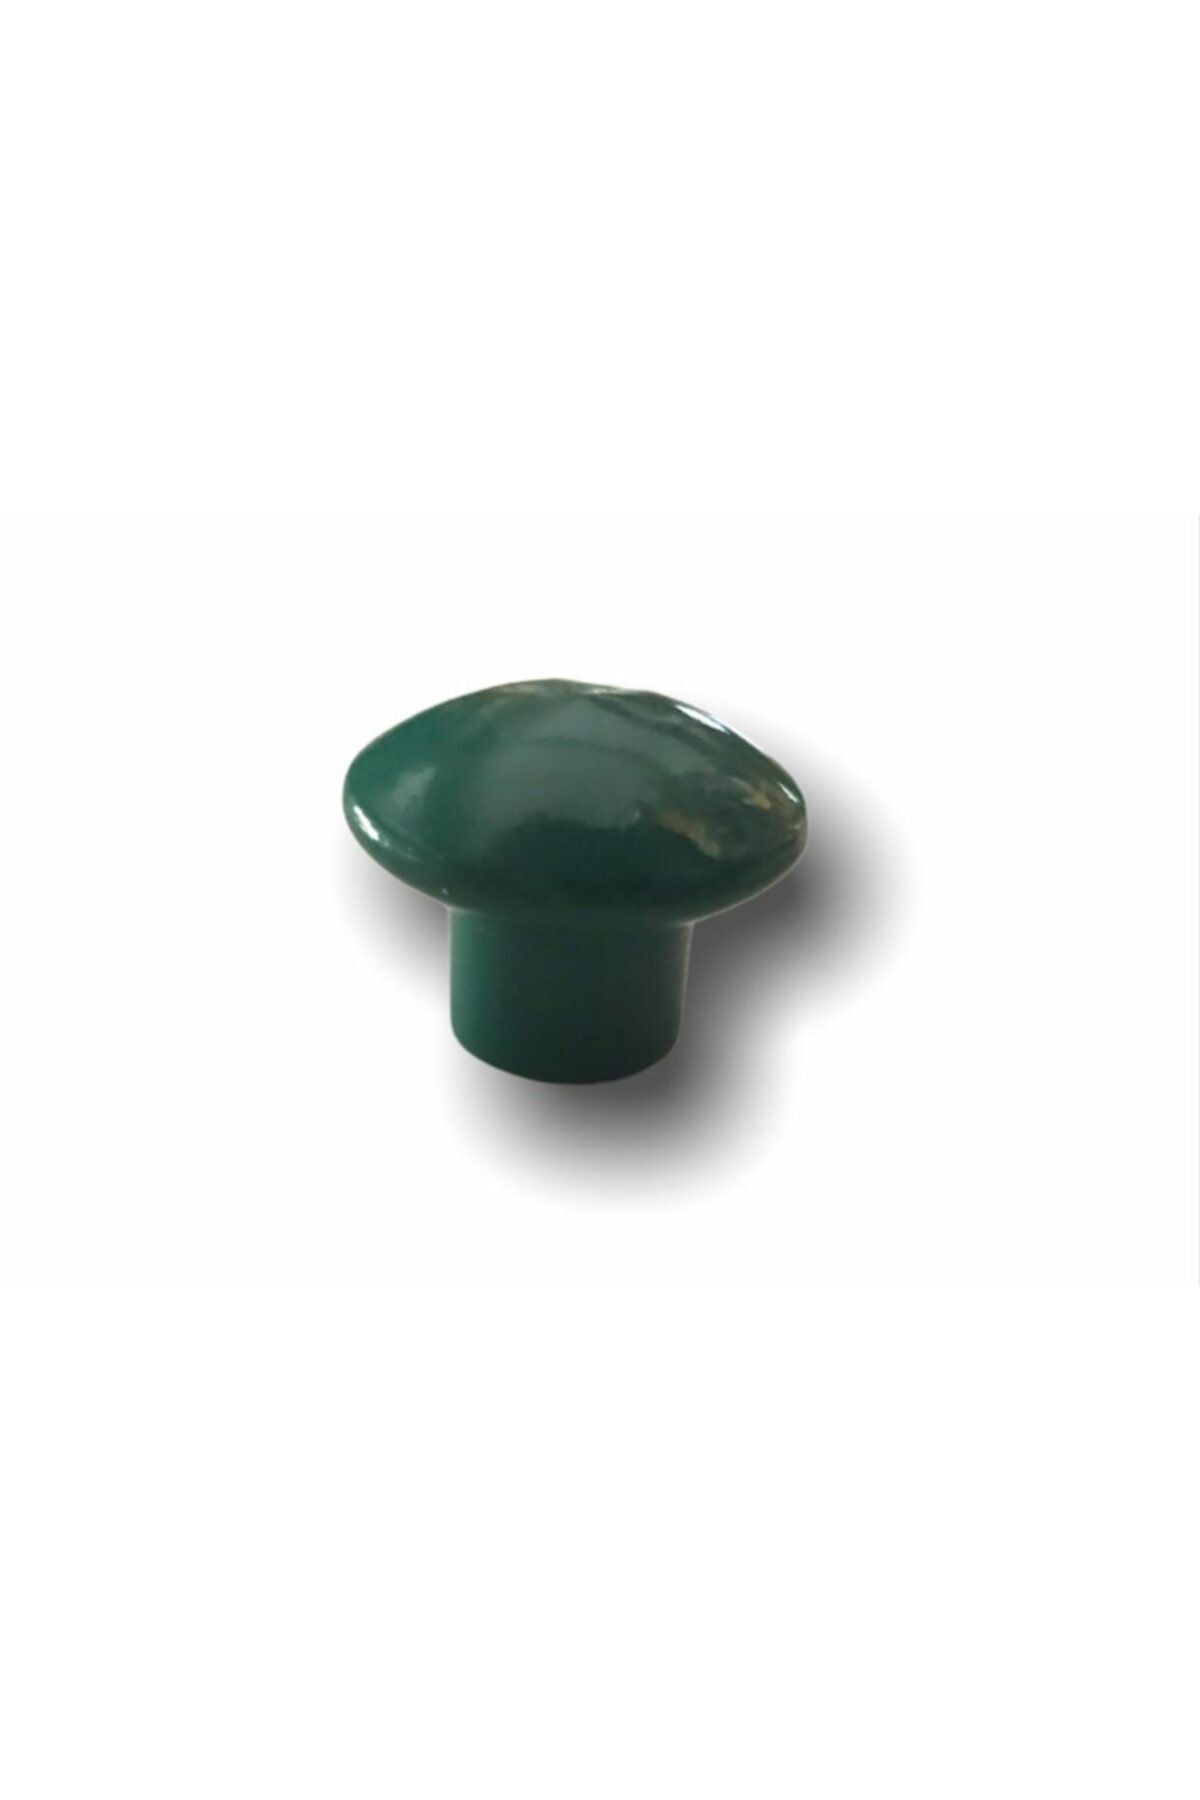 Özgül 5 Adet Yeşil Mantar Düğme 35mm Çaplı Çocuk Odası Vestiyer Dolap Çekmece Kapak Kulbu